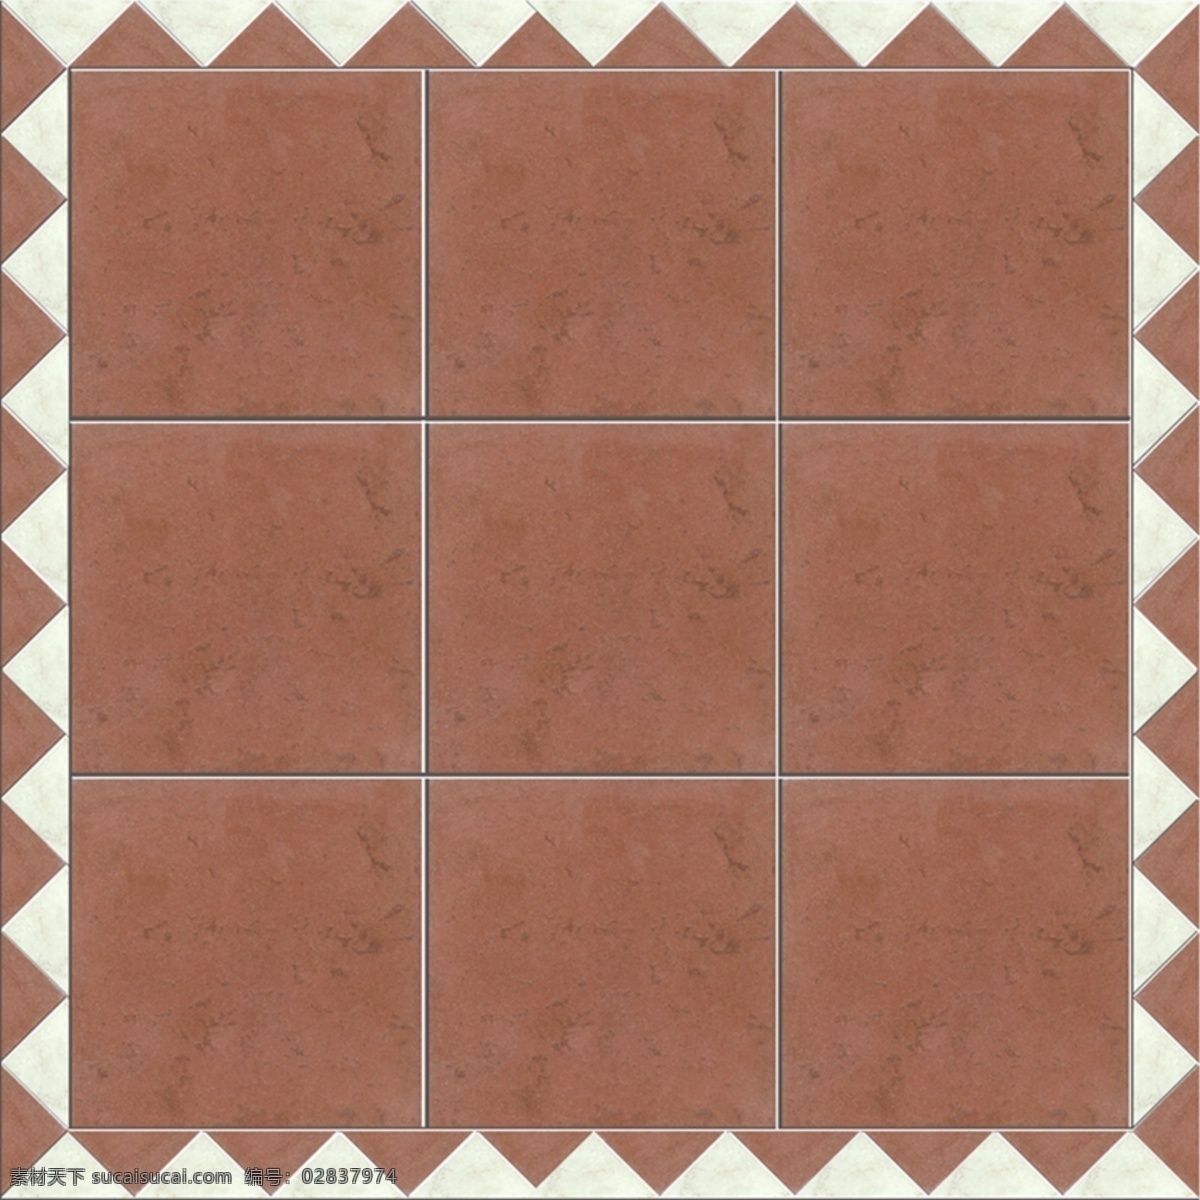 意大利 风格 地砖 棕红色 方块 纹理 质感 分层 背景素材